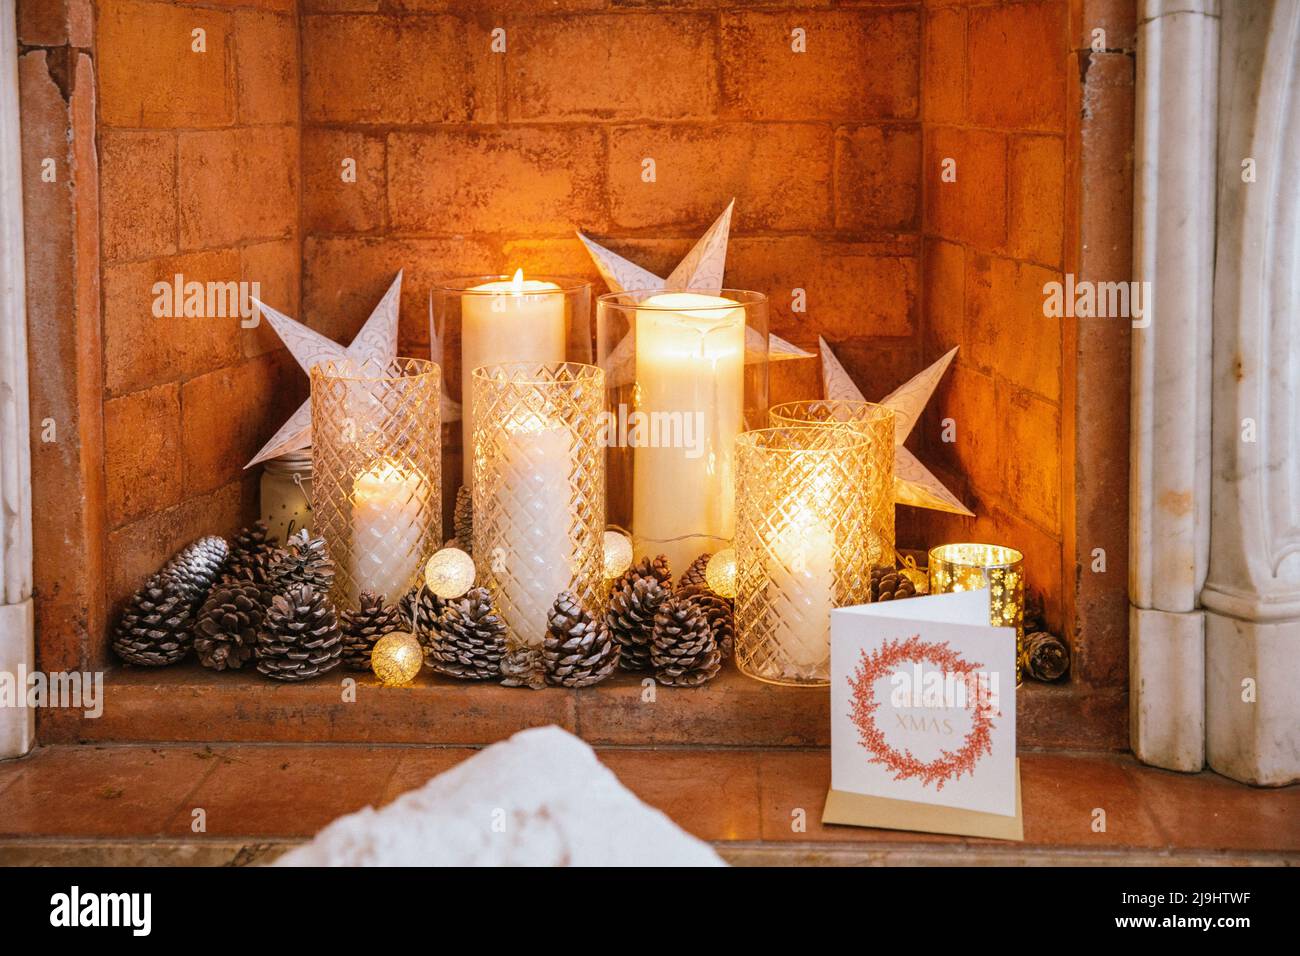 Velas de Navidad y tarjeta de felicitación dentro de la chimenea de ladrillo Foto de stock